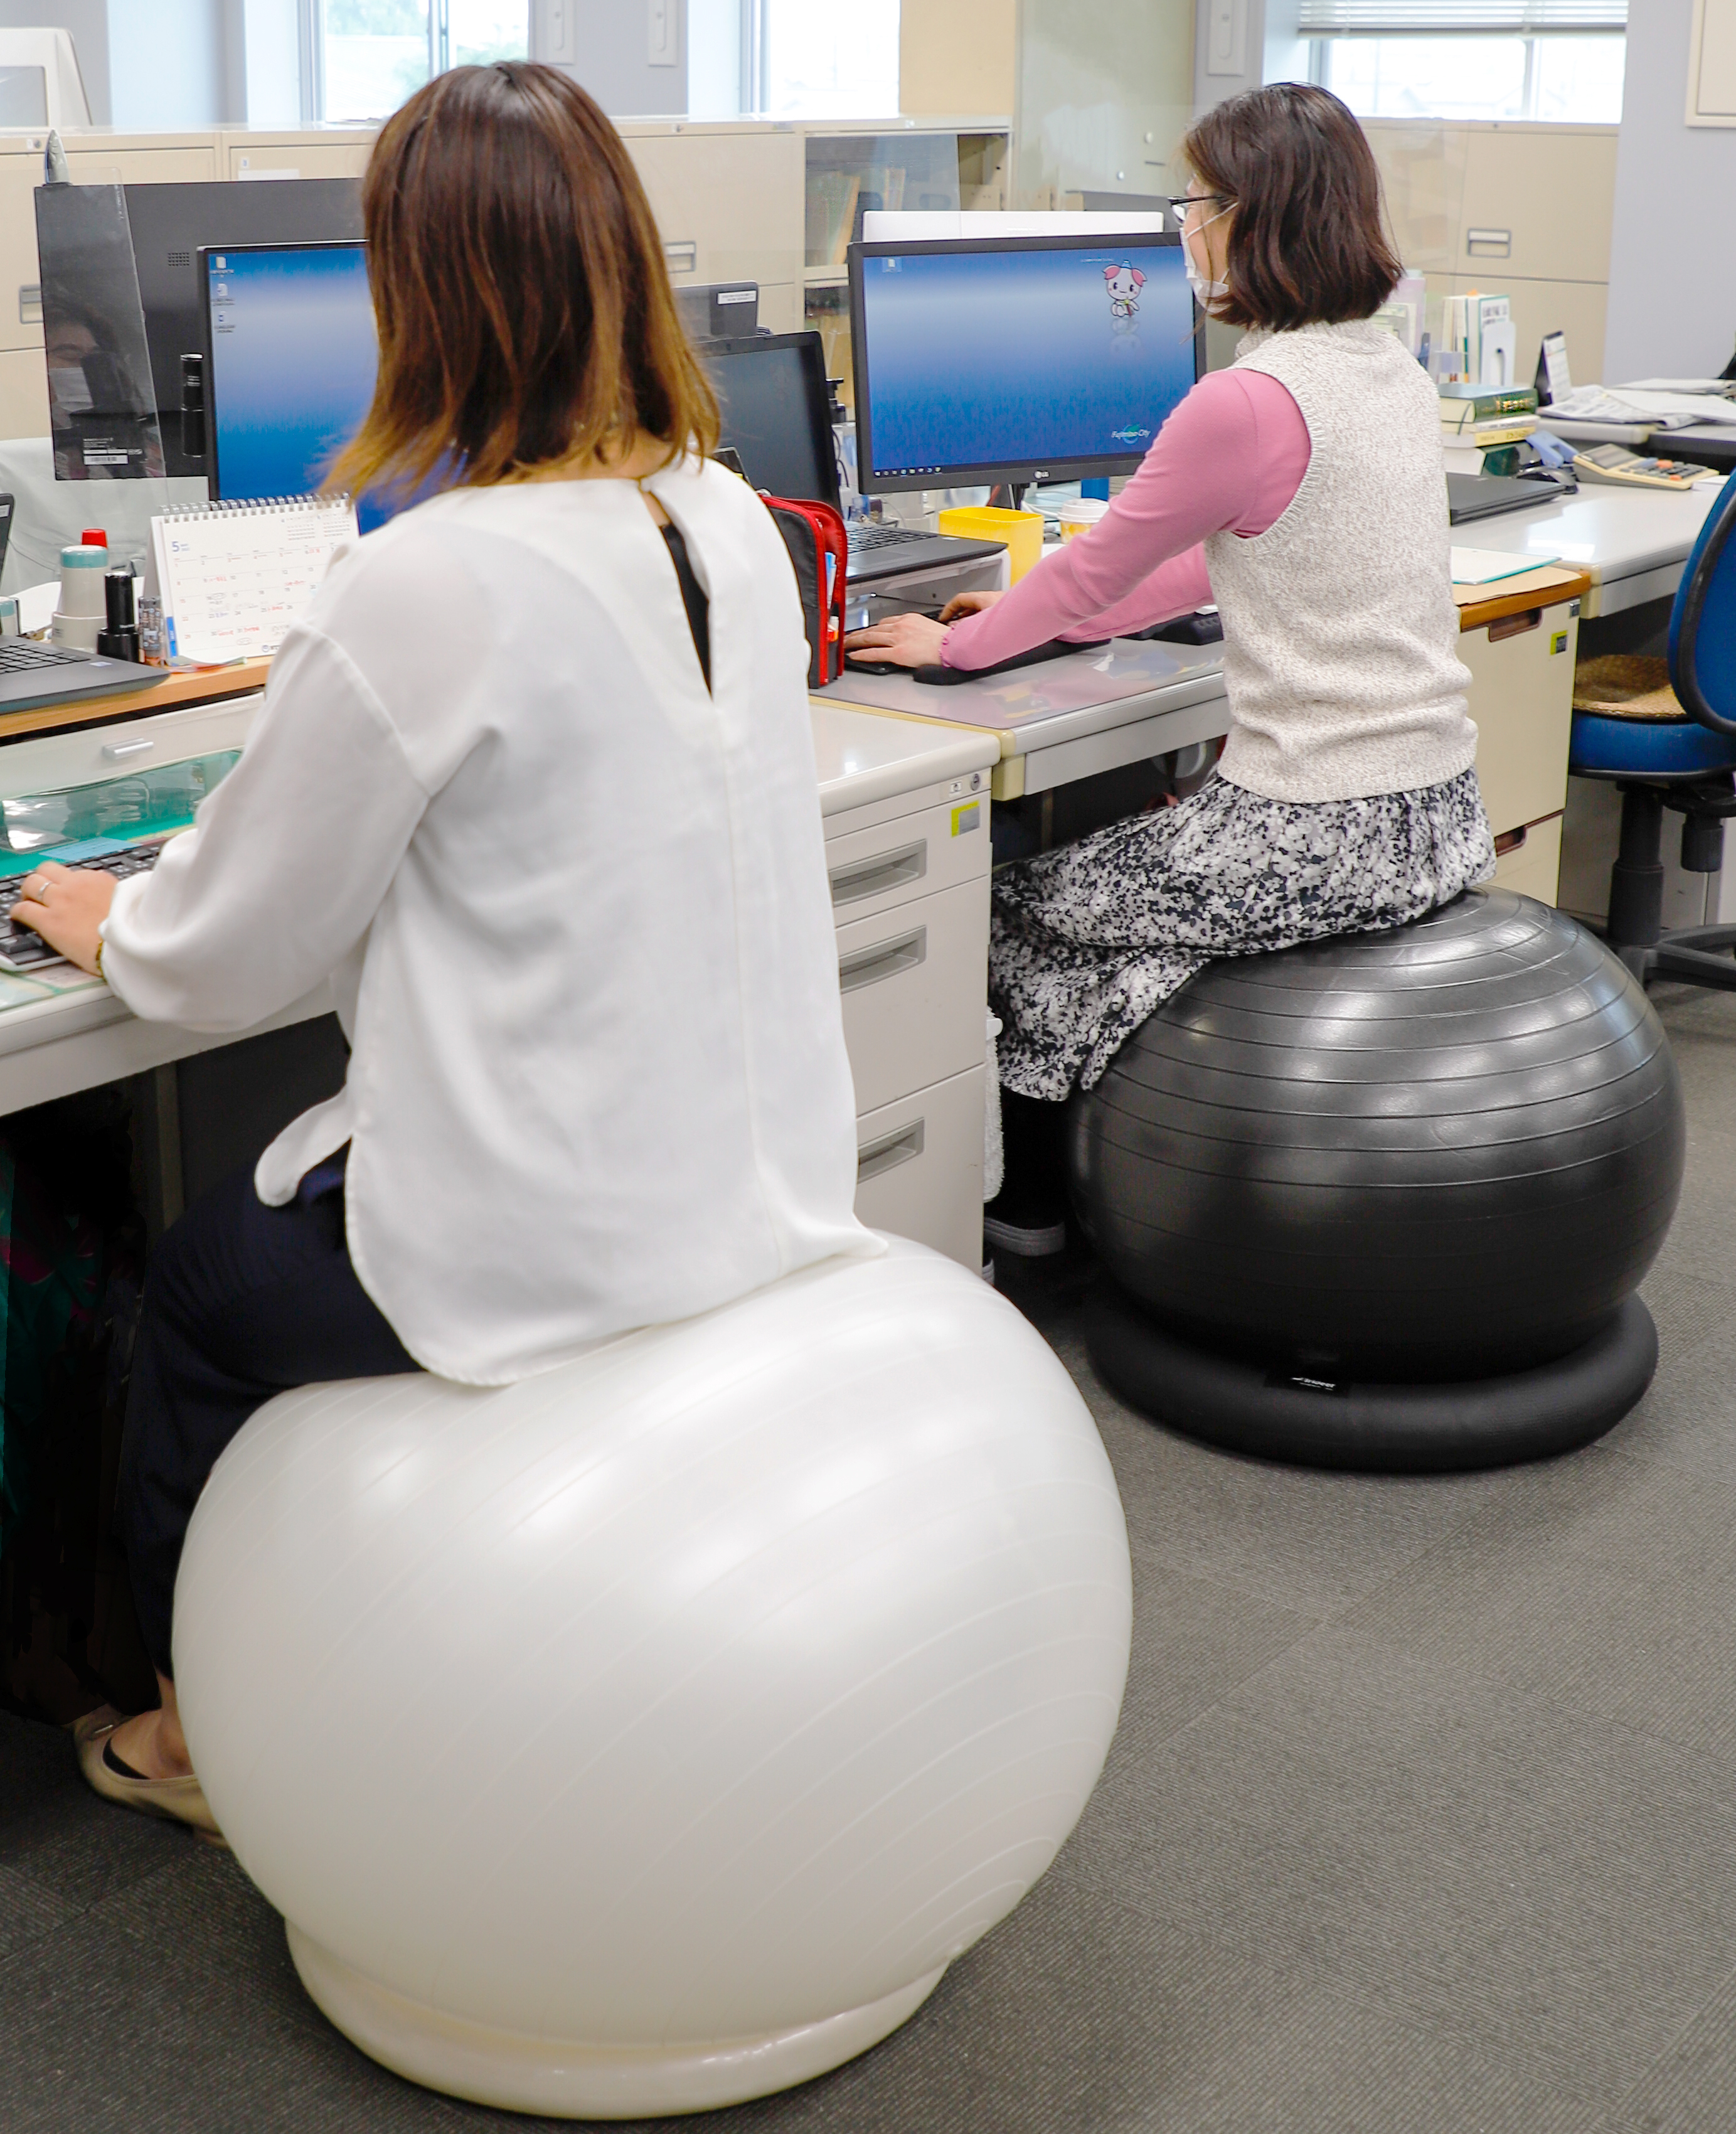 事務用椅子をバランスボールに置き替える取り組みの試験導入 埼玉県ふじみ野市のプレスリリース